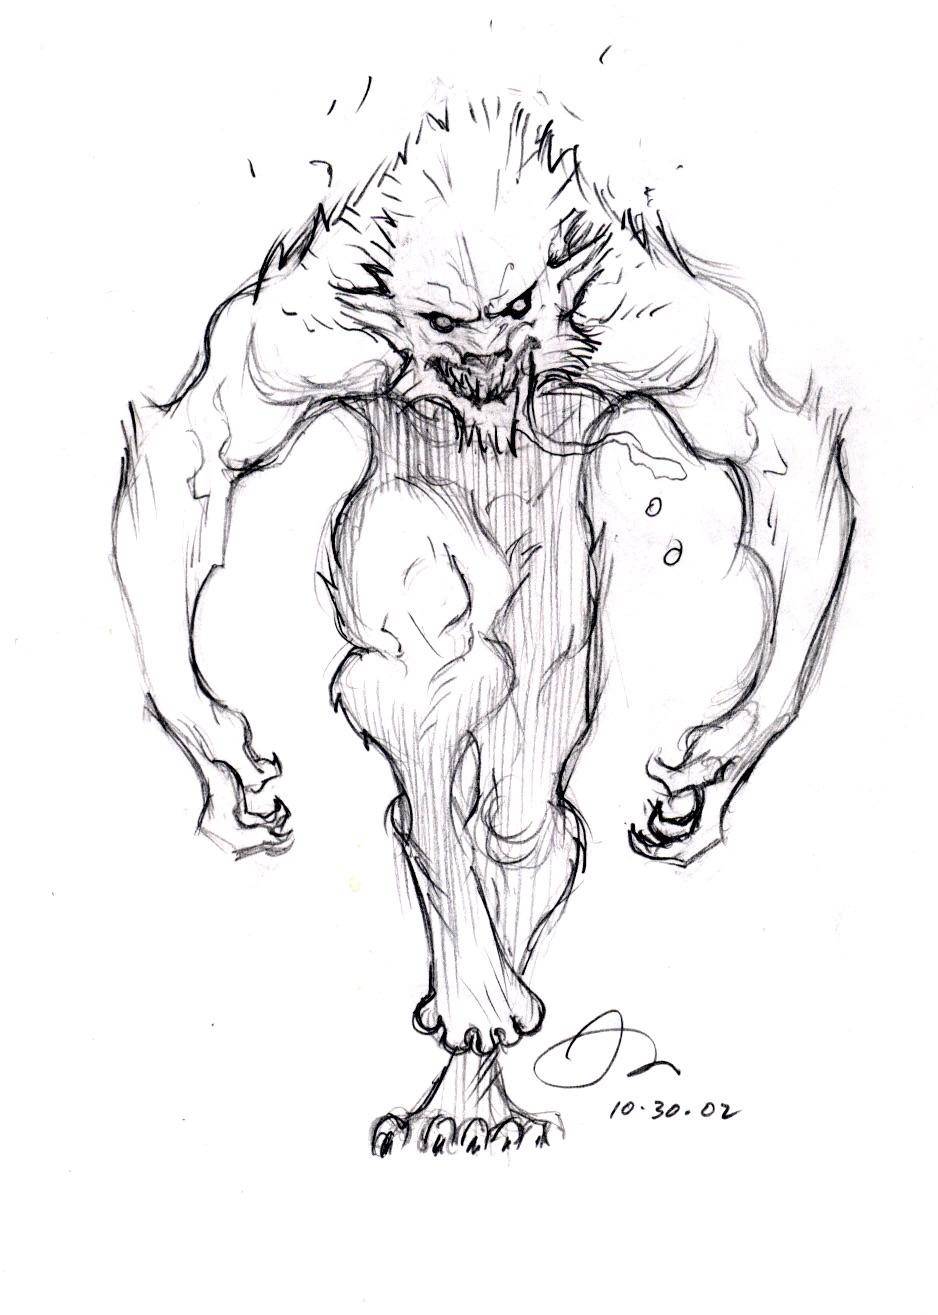 Van Helsing Official Werewolf Concept Art Scrolller